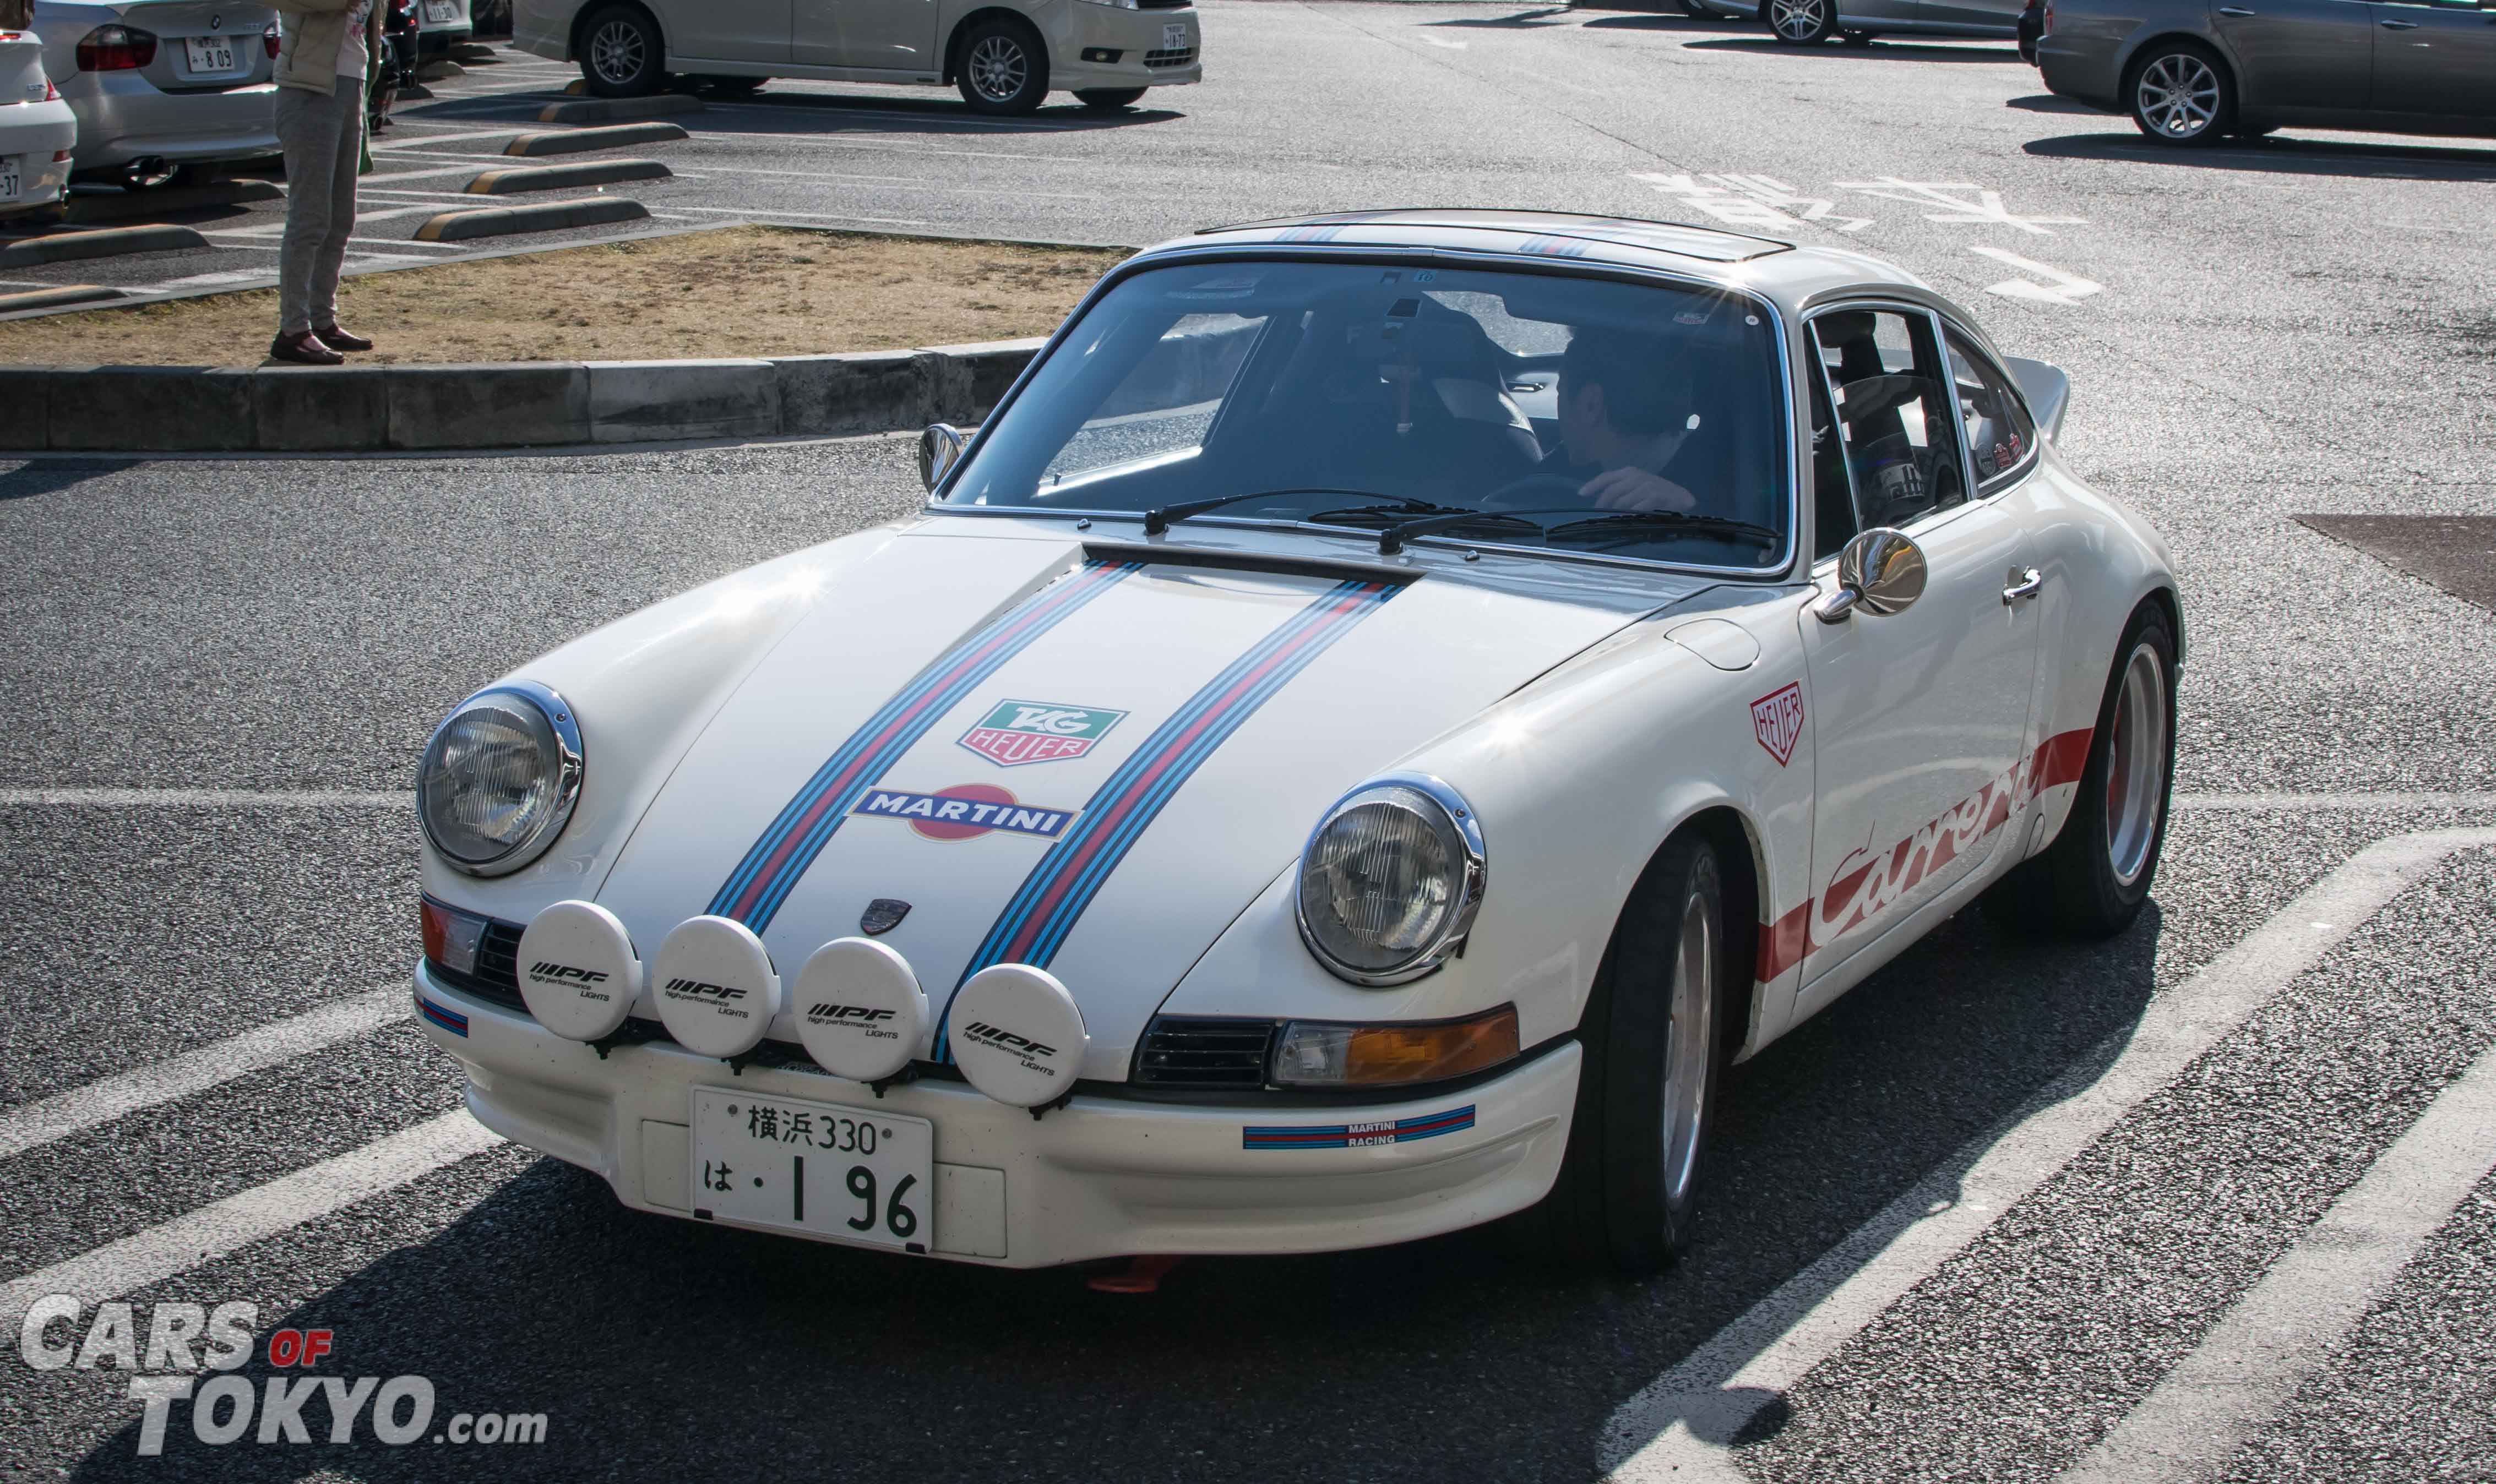 Cars of Tokyo Classic Porsche Carrera RS